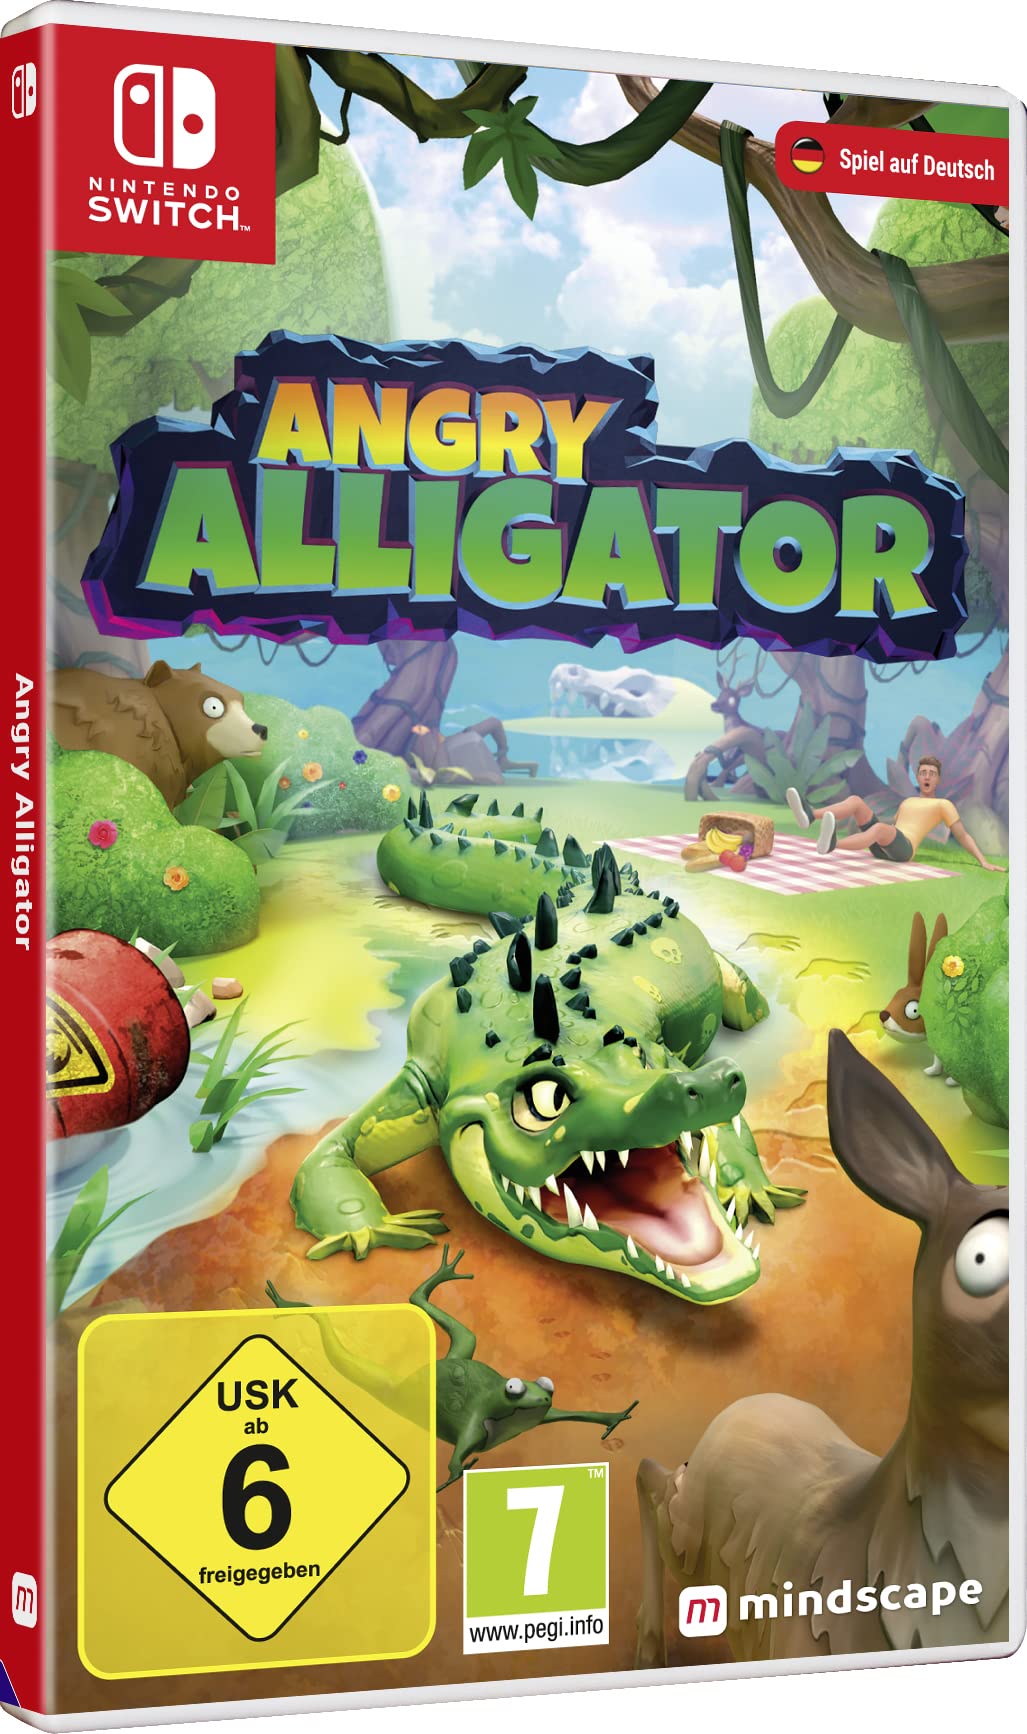 ANGRY ALLIGATOR - Das witzige Familien Spiel für Nintendo Switch